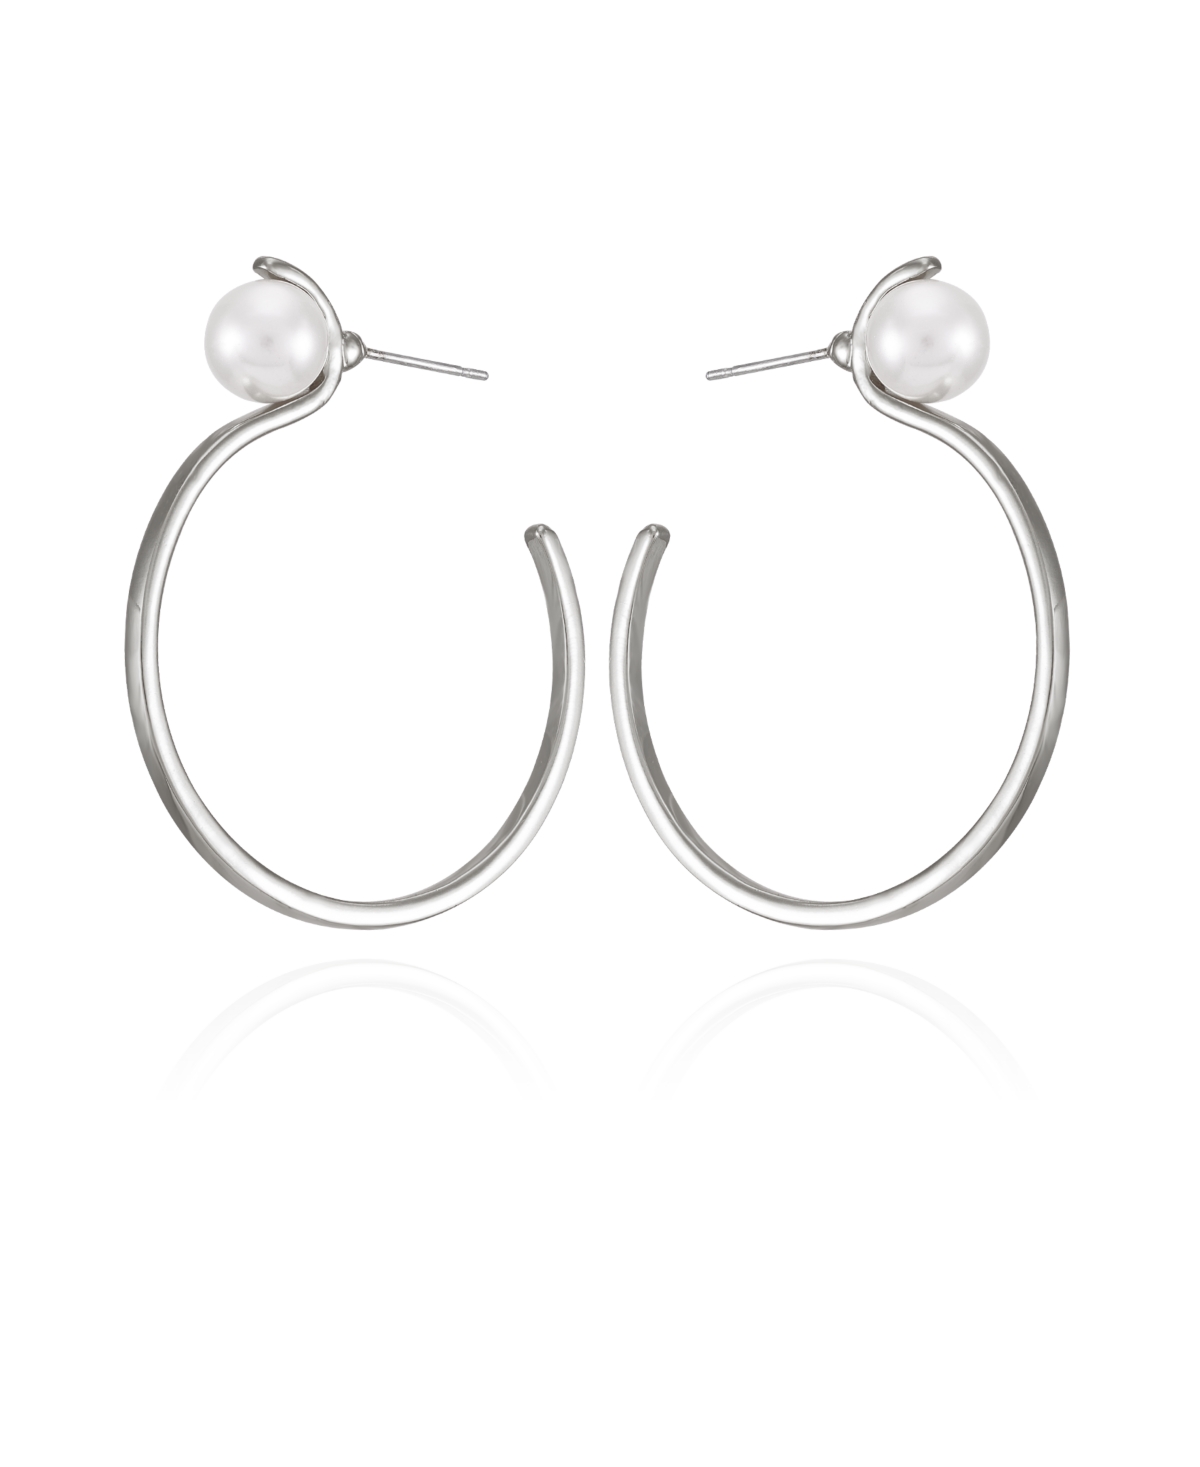 Silver-Tone Imitation Pearl Open C Hoop Earrings - Silver